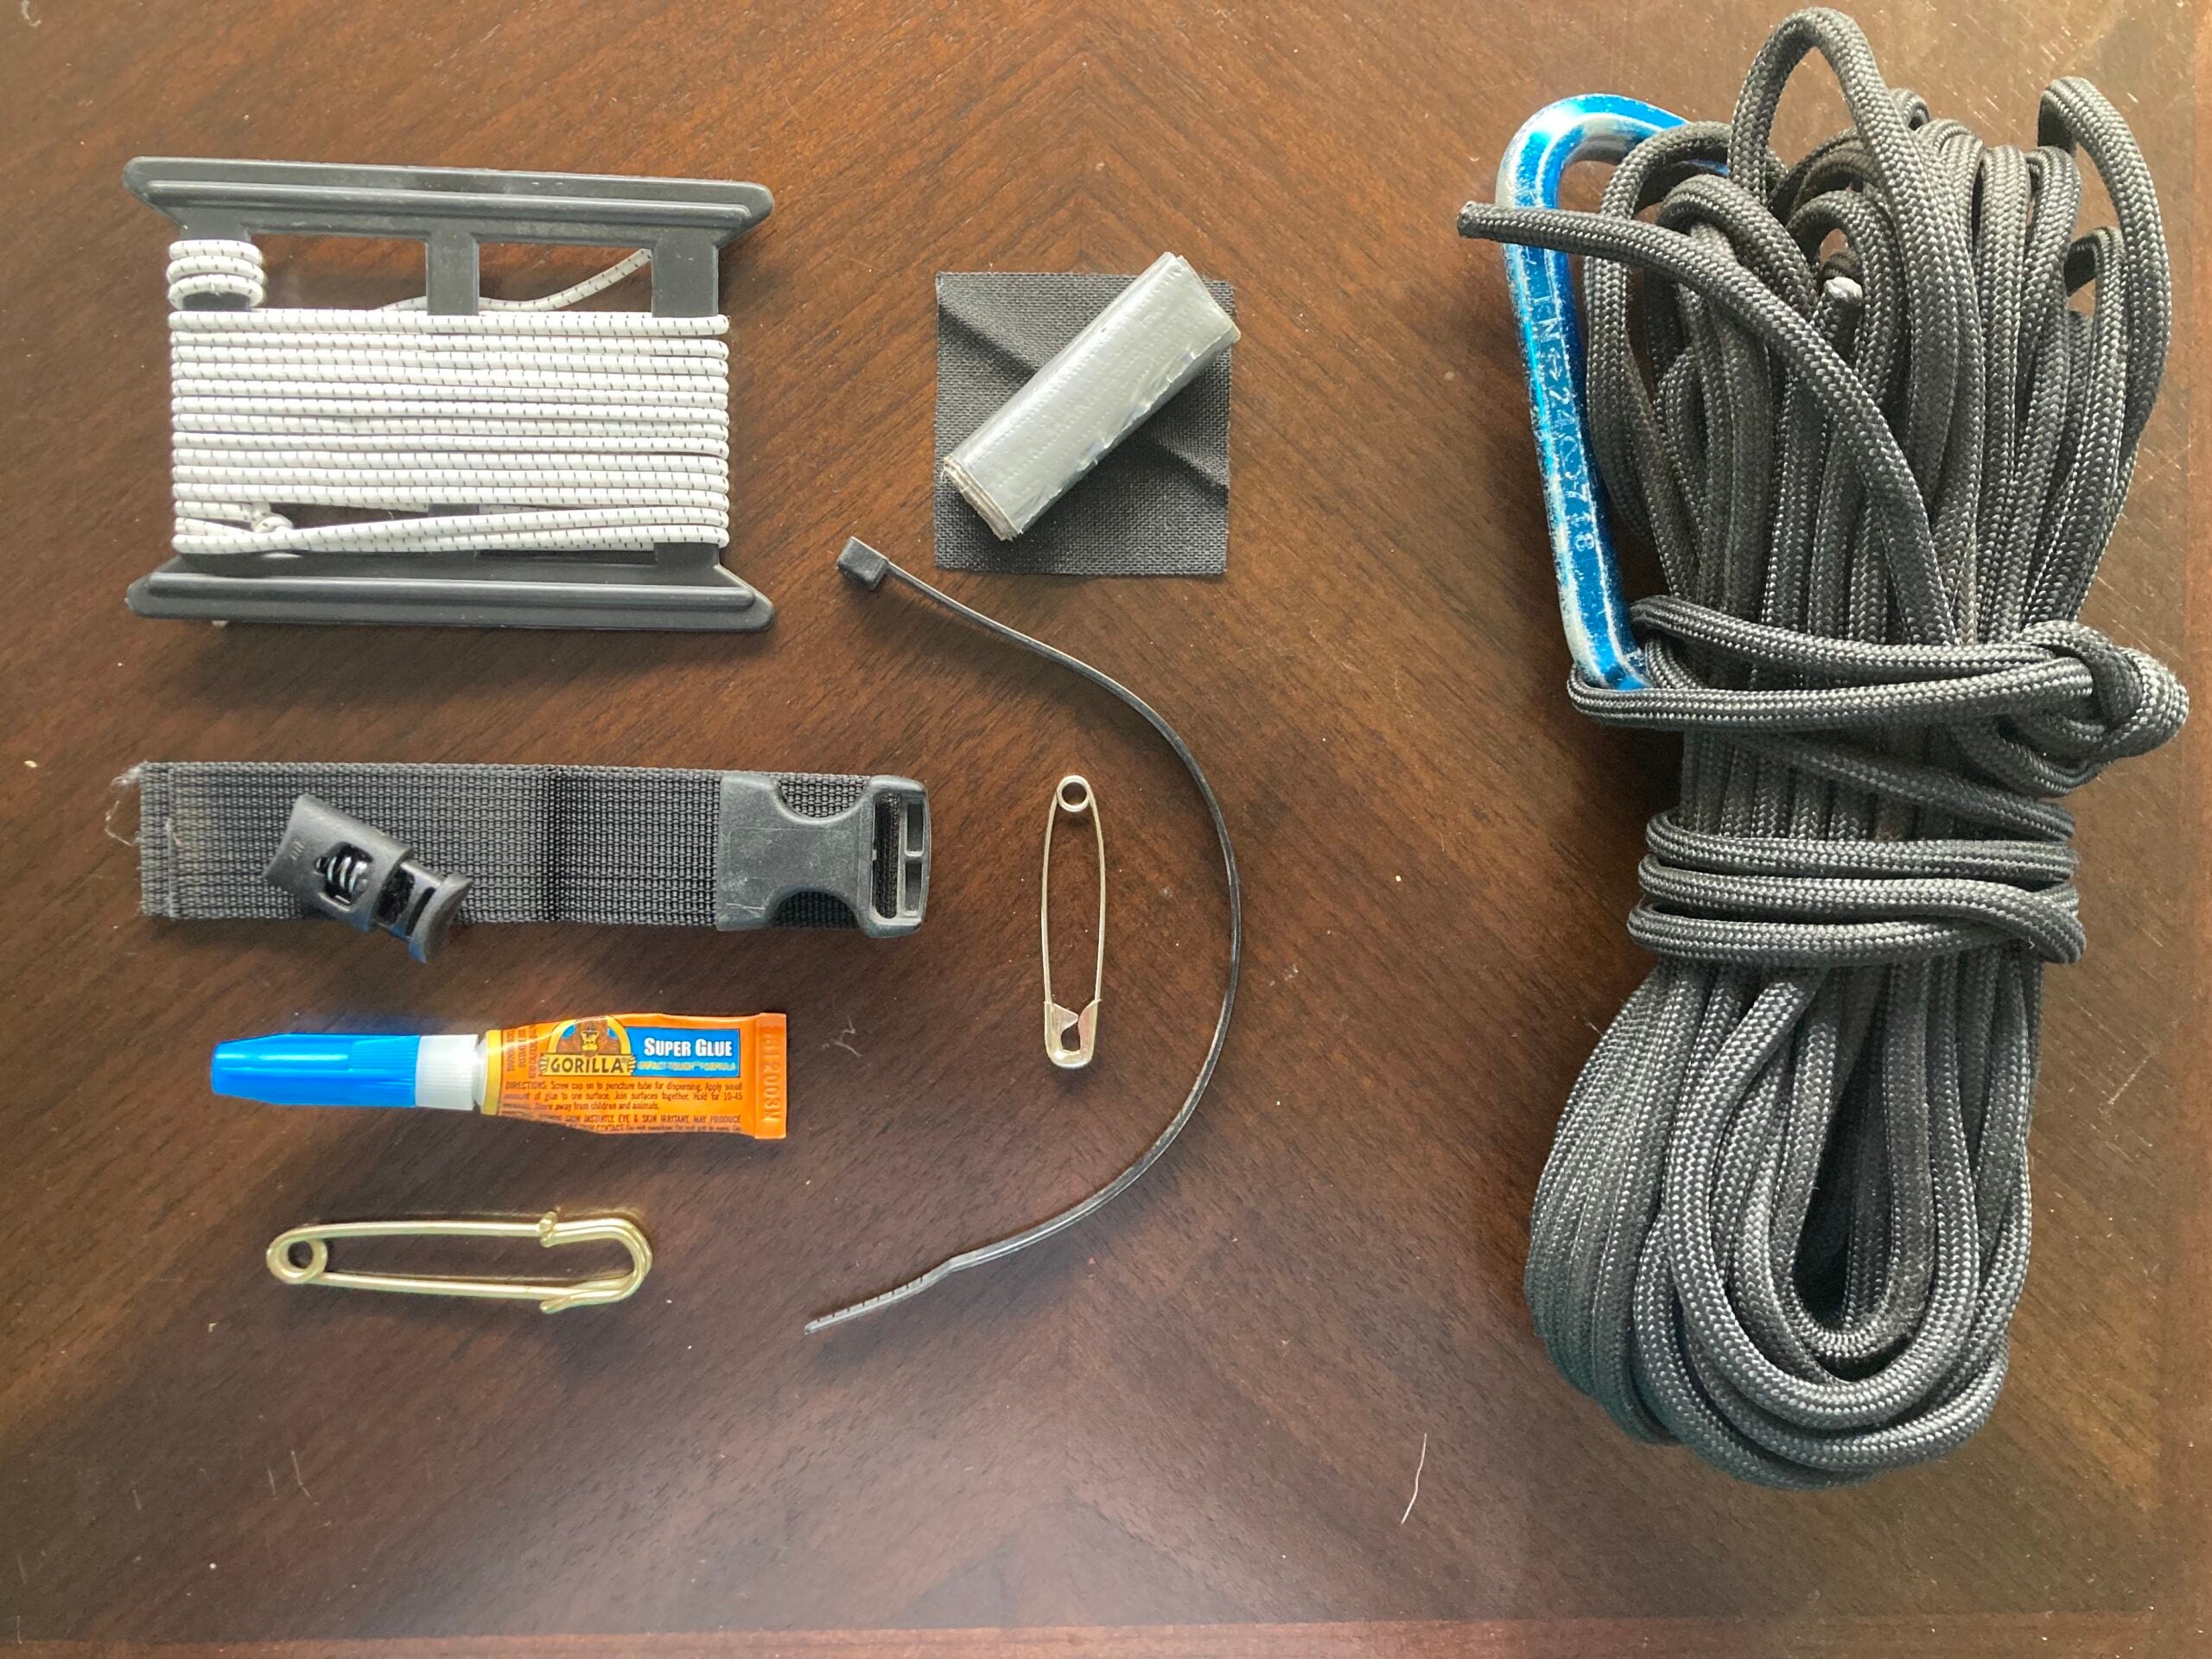 Seam Grip Field Repair Kit, Boot Repair